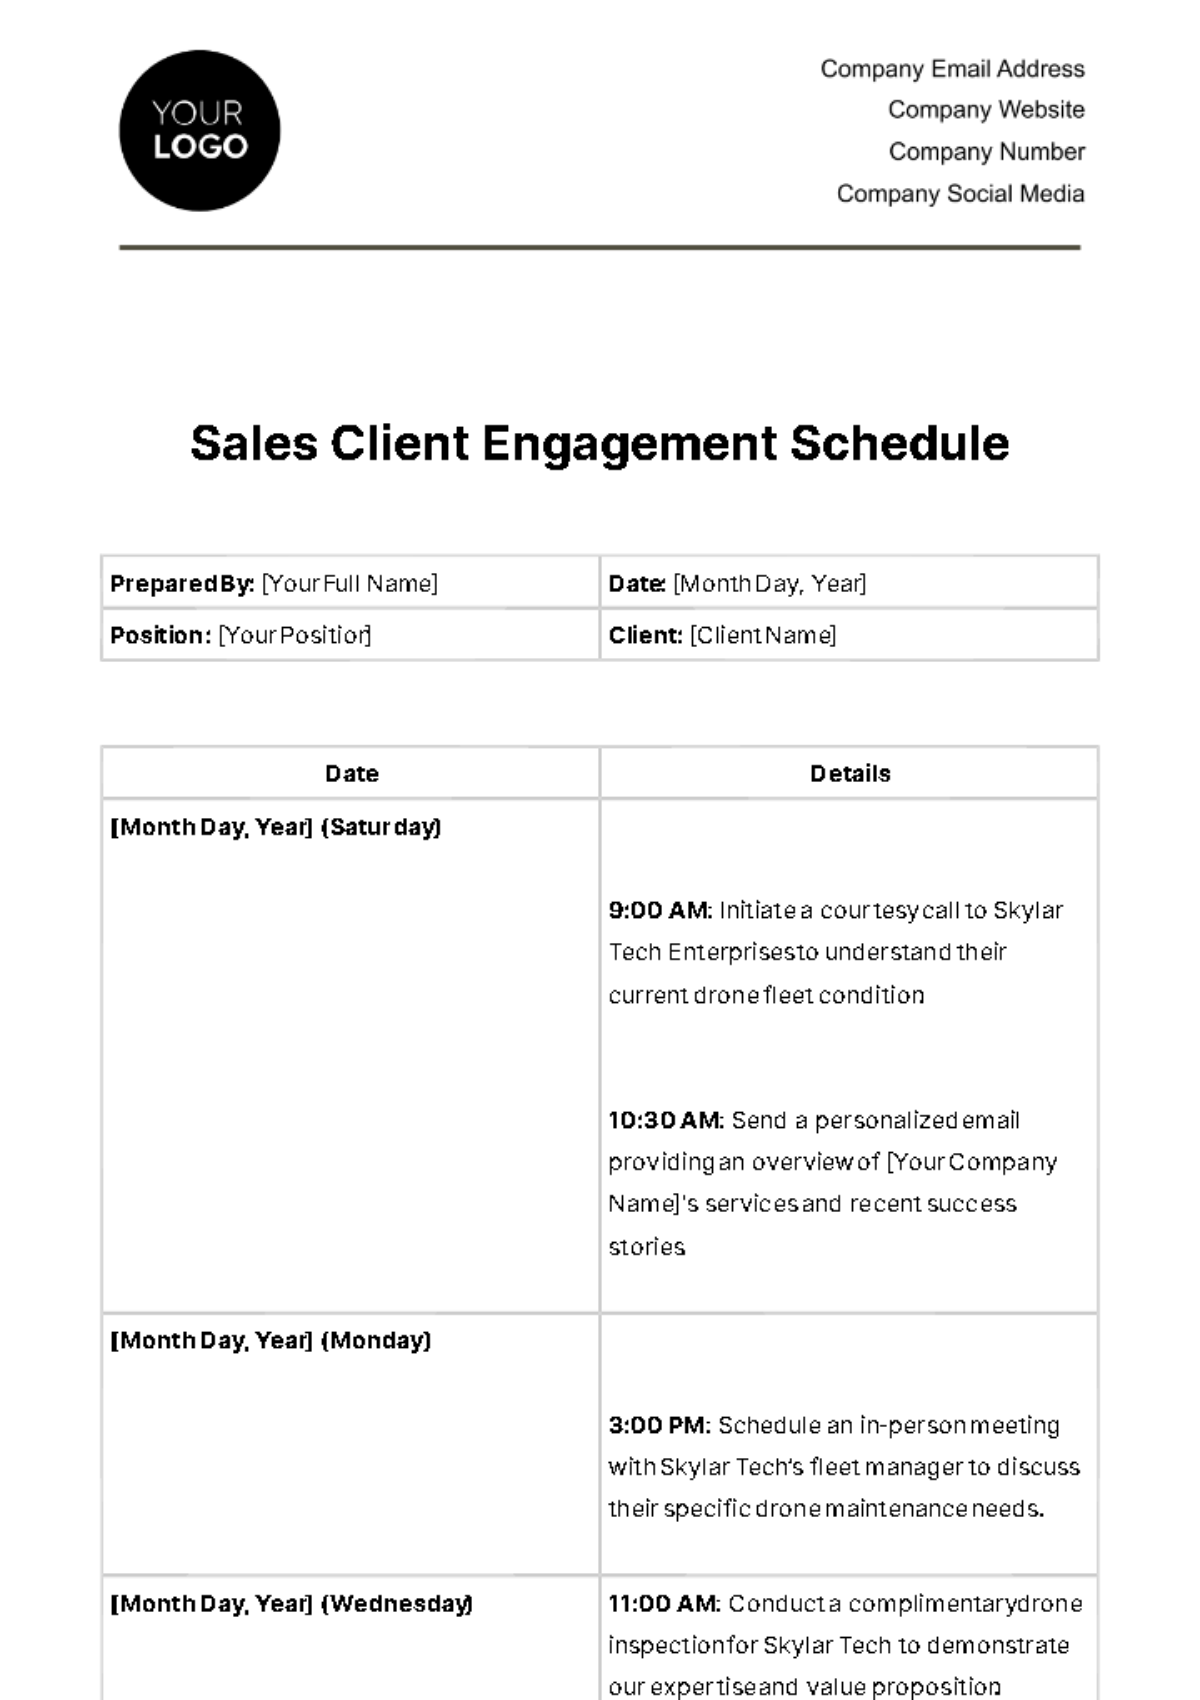 Sales Client Engagement Schedule Template